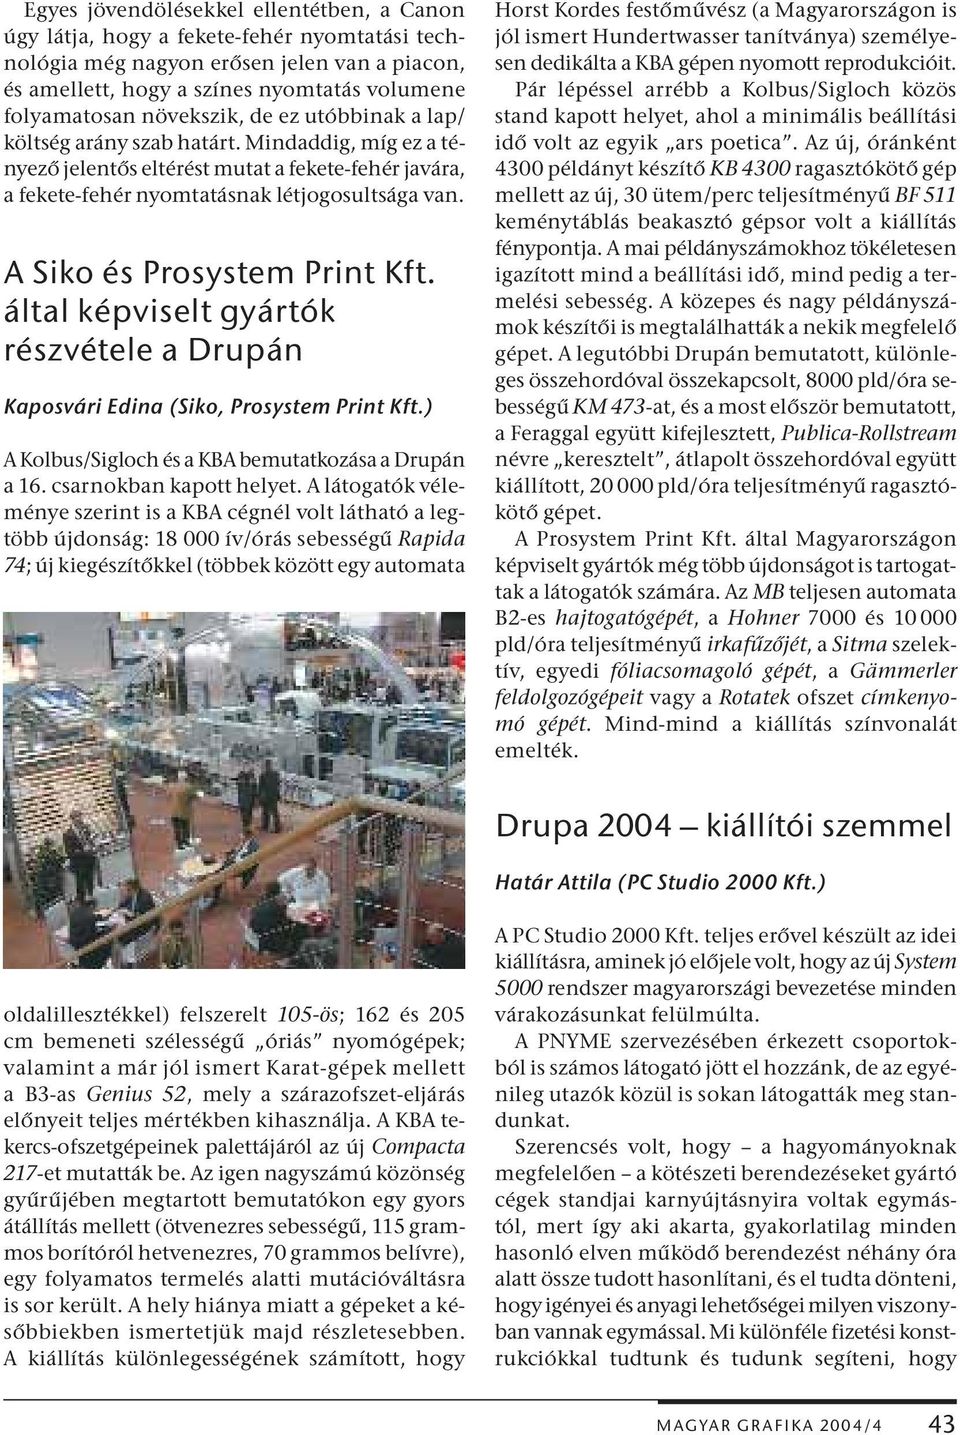 A Siko és Prosystem Print Kft. által képviselt gyártók részvétele a Drupán Kaposvári Edina (Siko, Prosystem Print Kft.) A Kolbus/Sigloch és a KBA bemutatkozása a Drupán a 16. csarnokban kapott helyet.